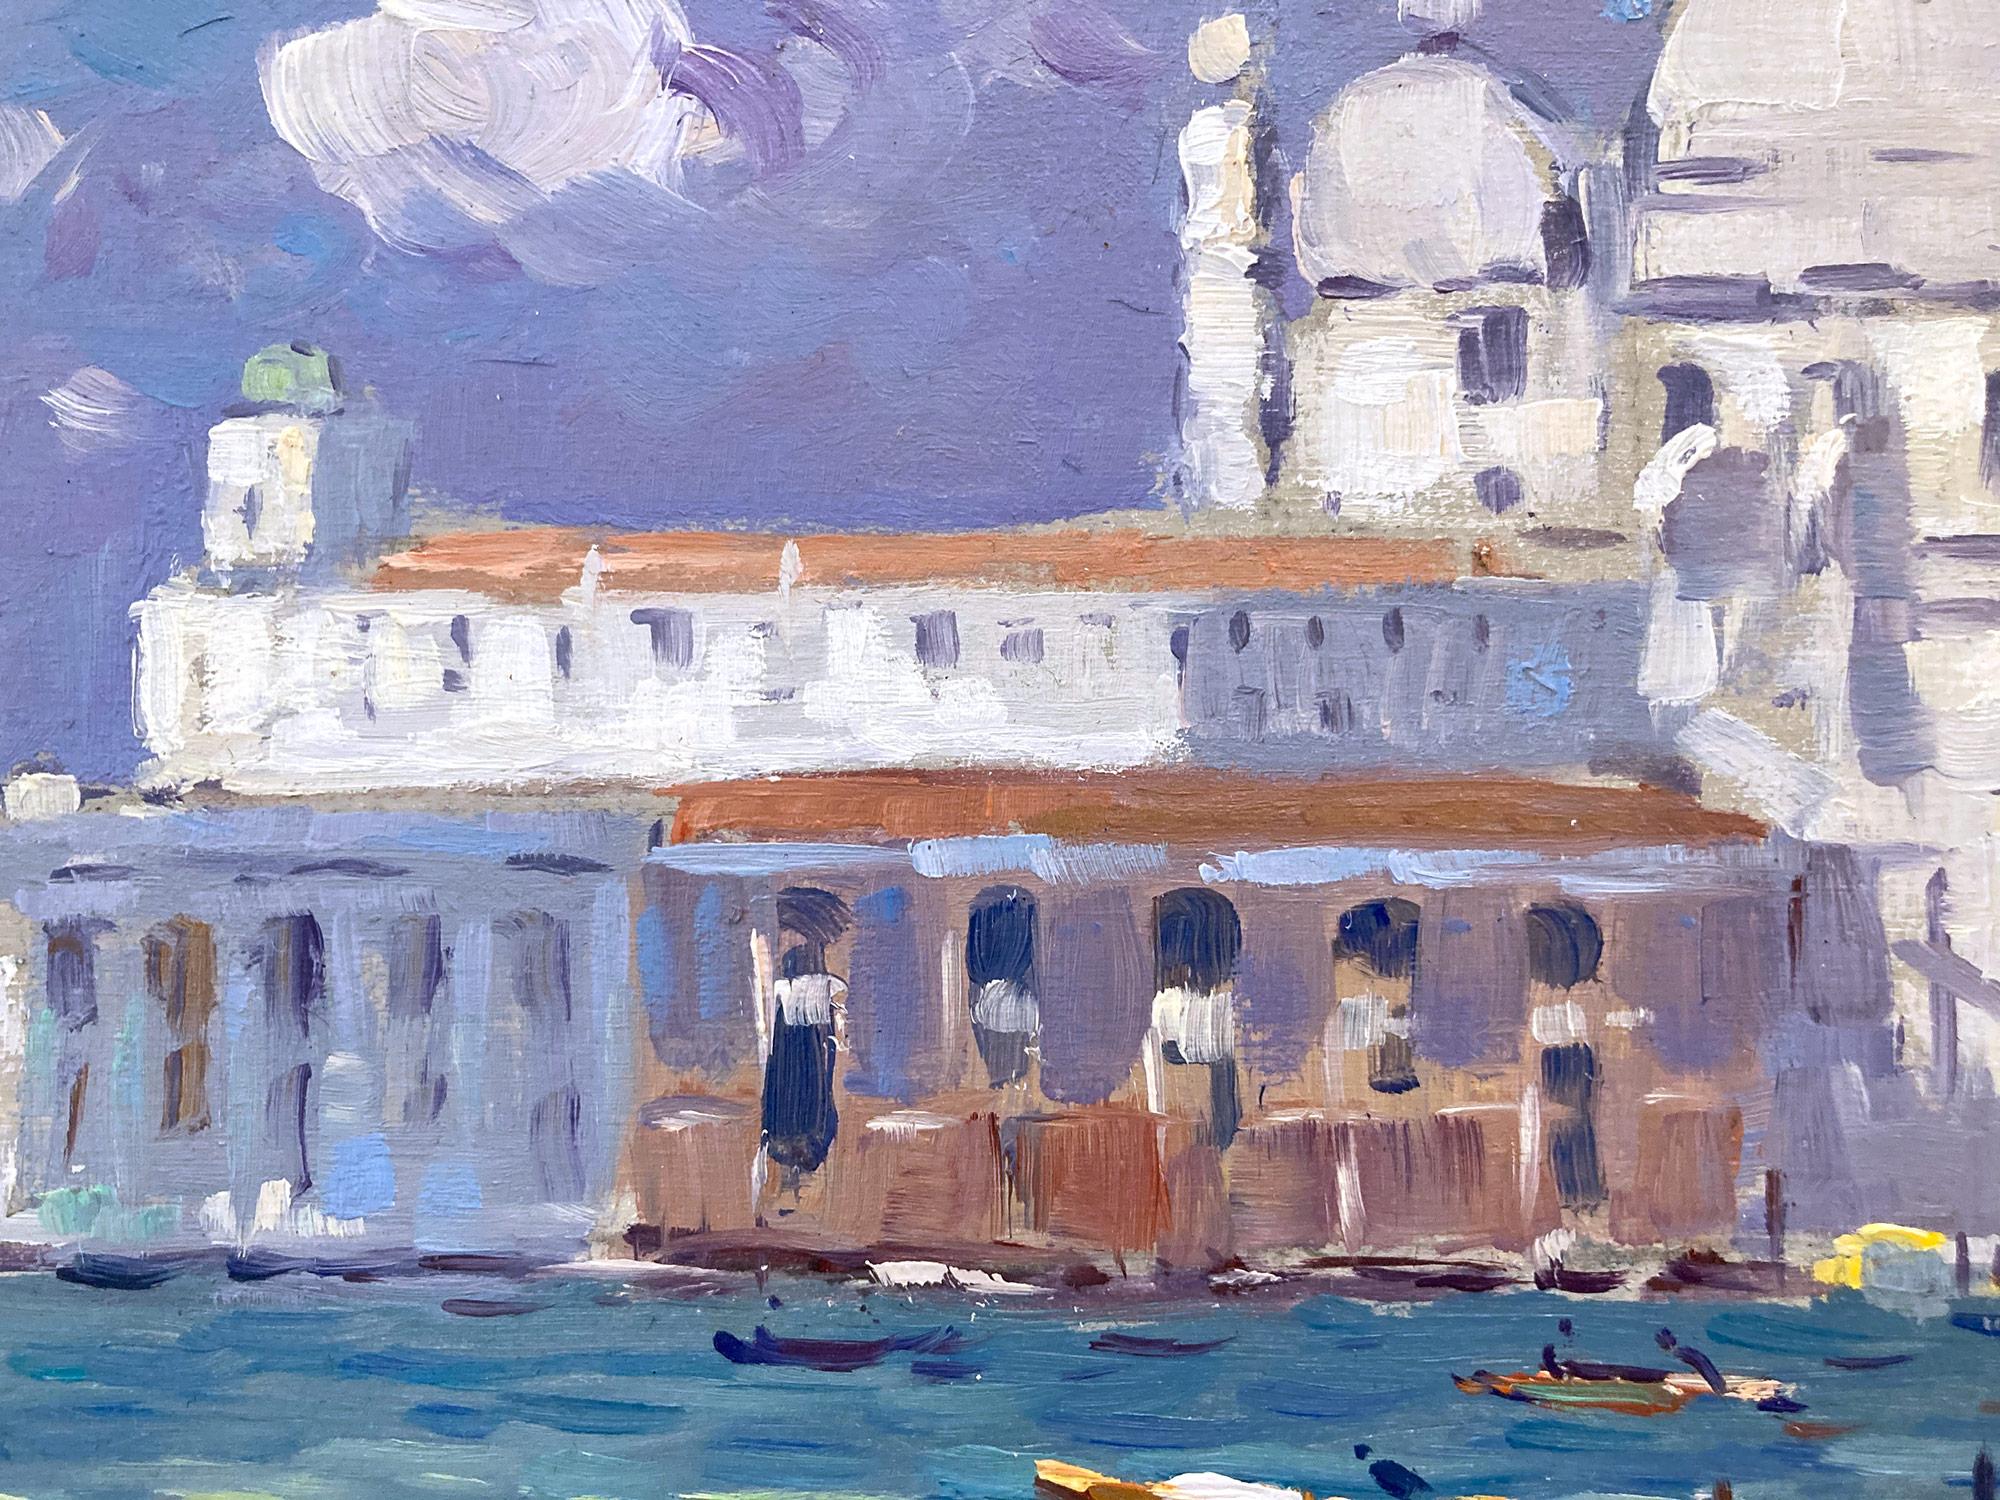 Diese bezaubernde Venedig-Szene aus dem 20. Jahrhundert ist ein wunderbares Beispiel für Van der Plas' wahre Leidenschaft für Genrebilder im Freien. Die leuchtenden Farben und die impressionistische Pinselführung sind sowohl launisch als auch kühn.